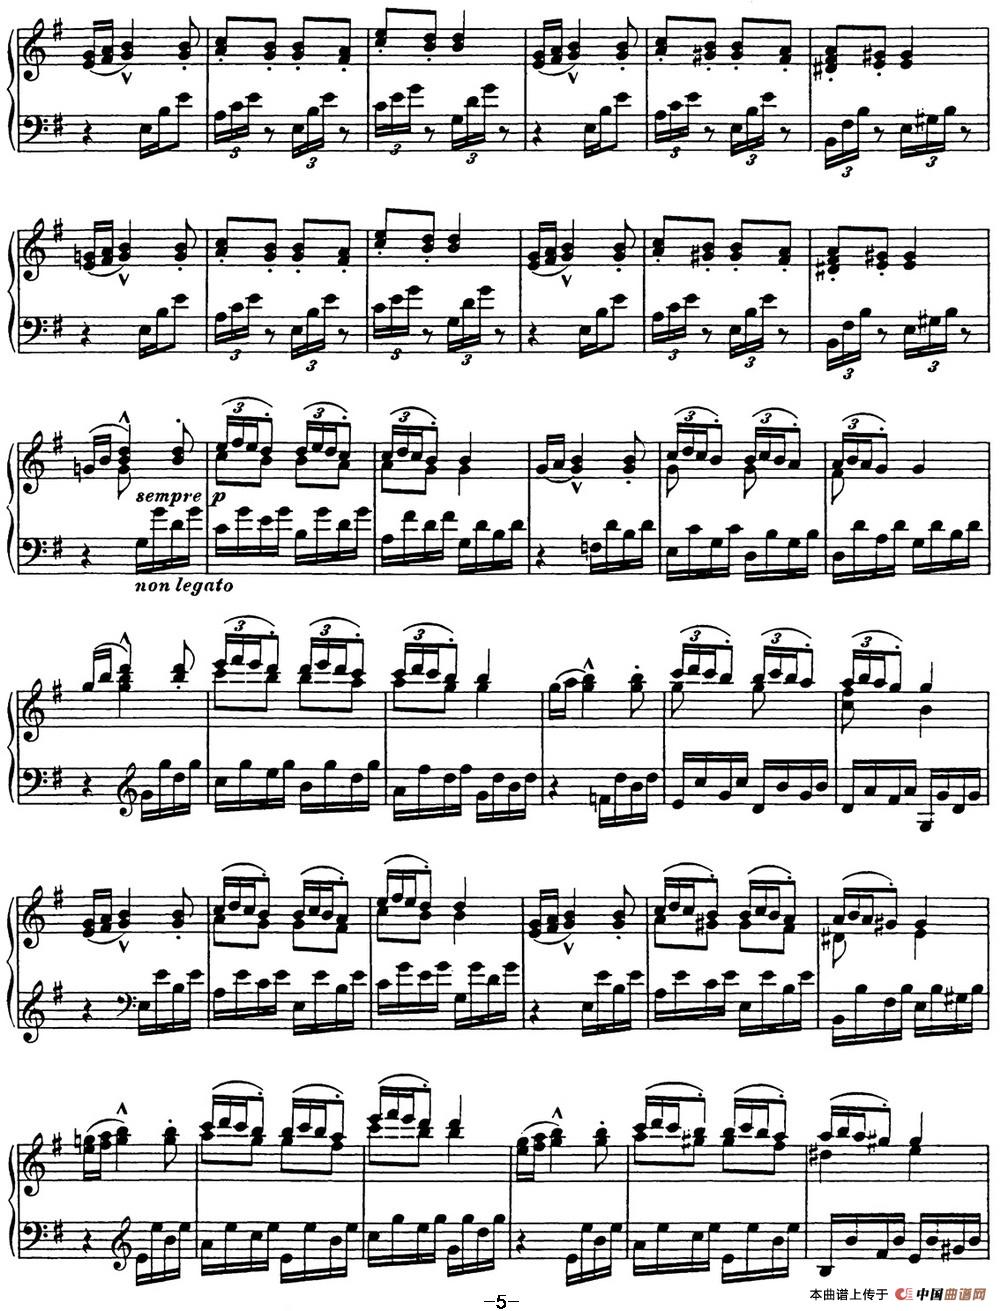 《李斯特 匈牙利狂想曲 Hungarian Rhapsodies S.244 No.7》钢琴曲谱图分享